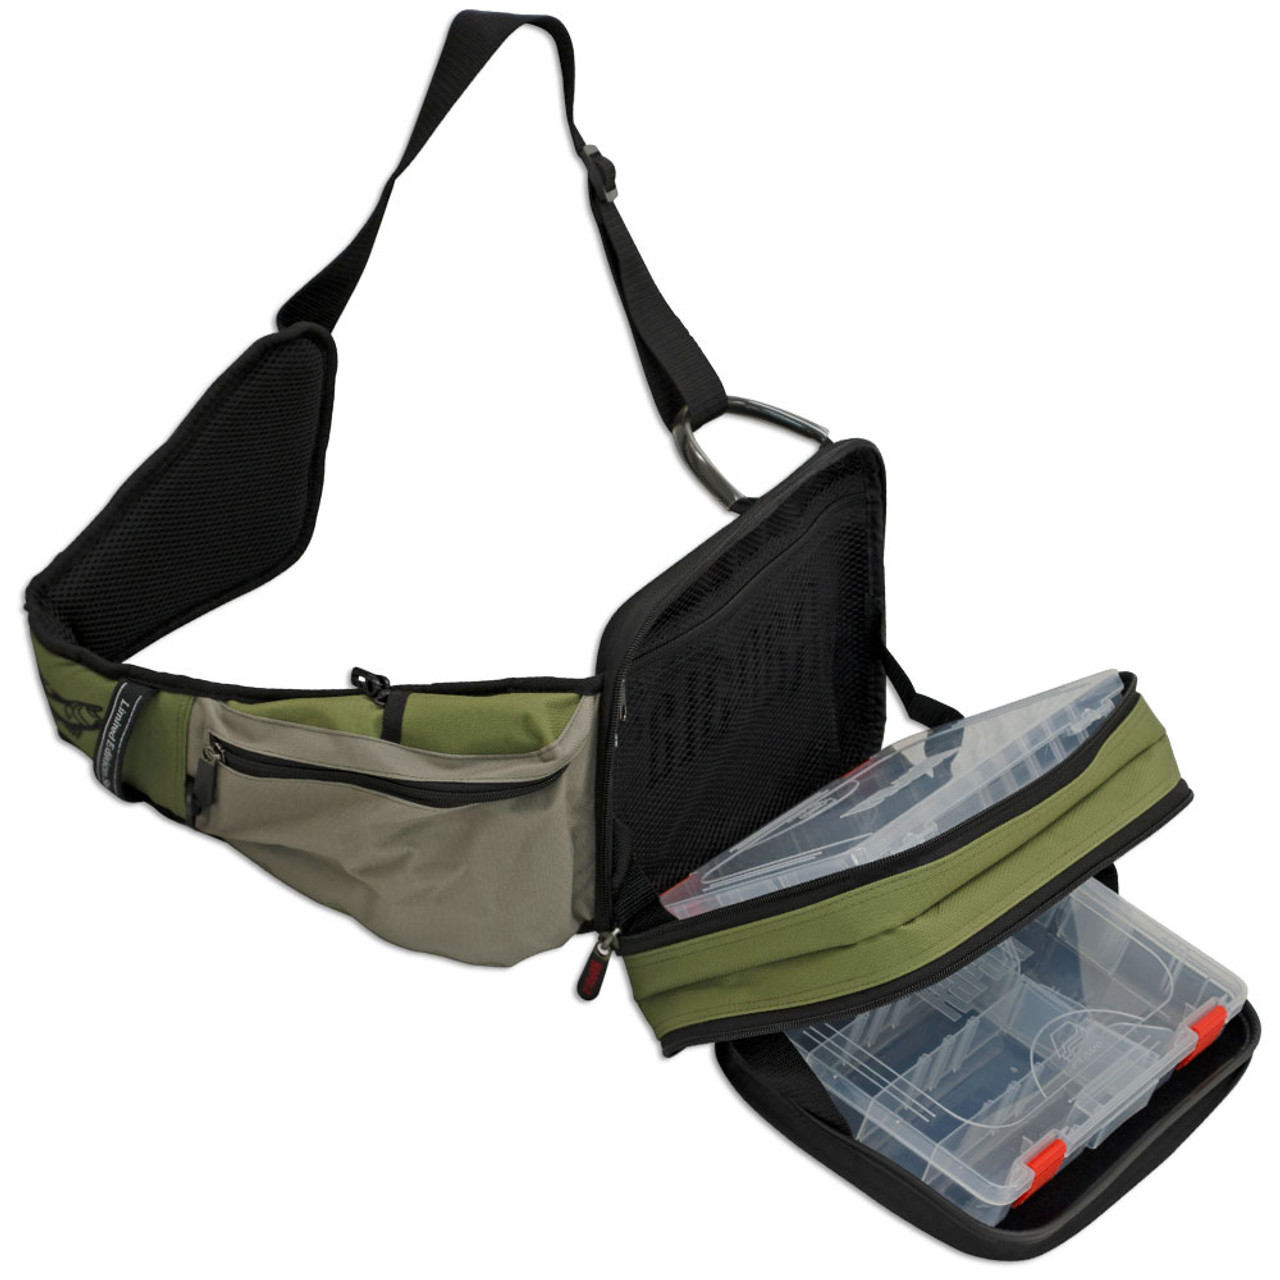 Rapala Sling bag - Tackle Storage Bag Standard or Magnum Size